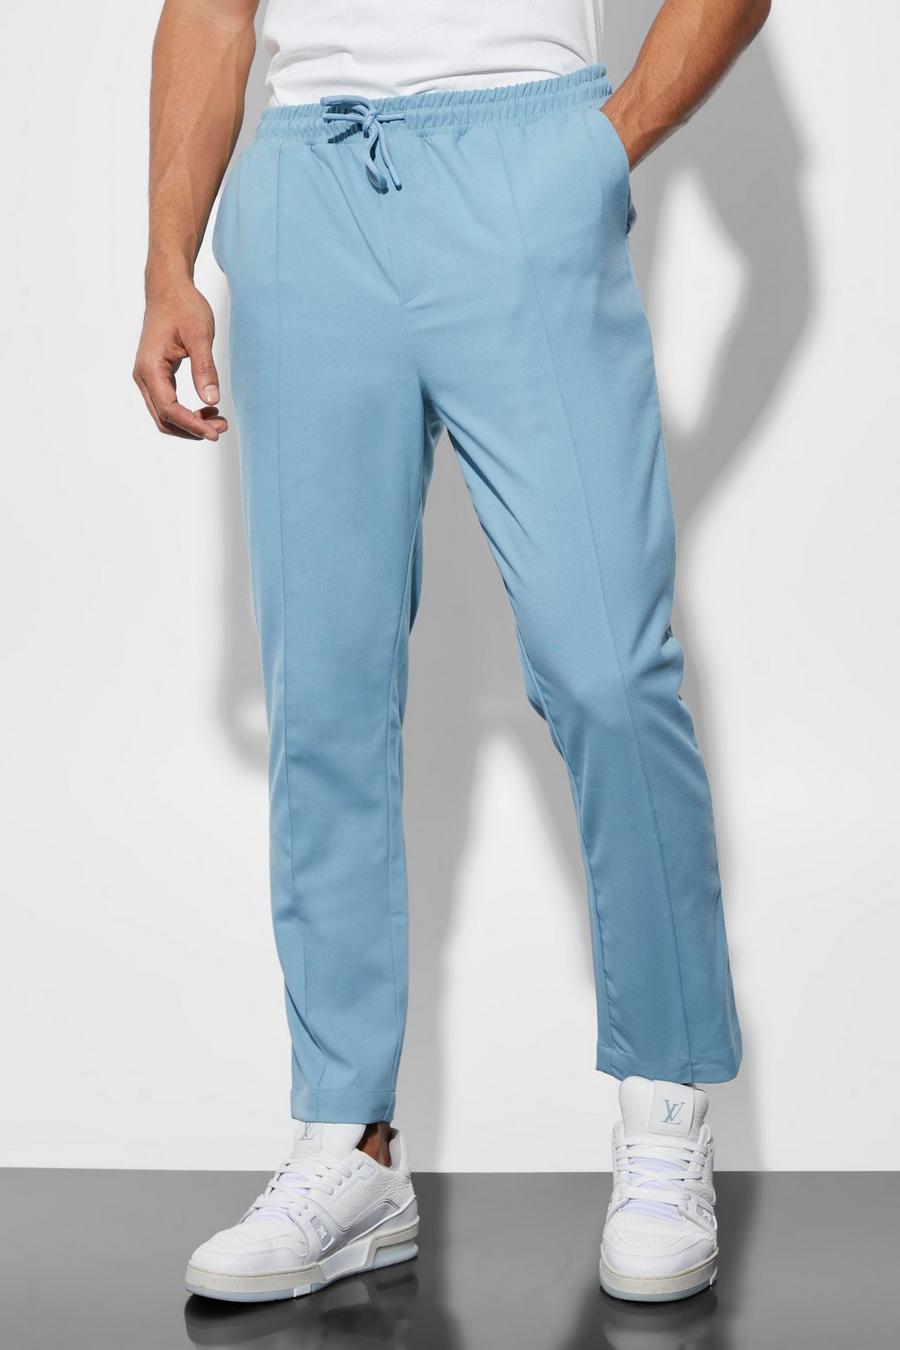 Pantaloni tuta affusolati elasticizzati con nervature, Dusty blue azzurro image number 1